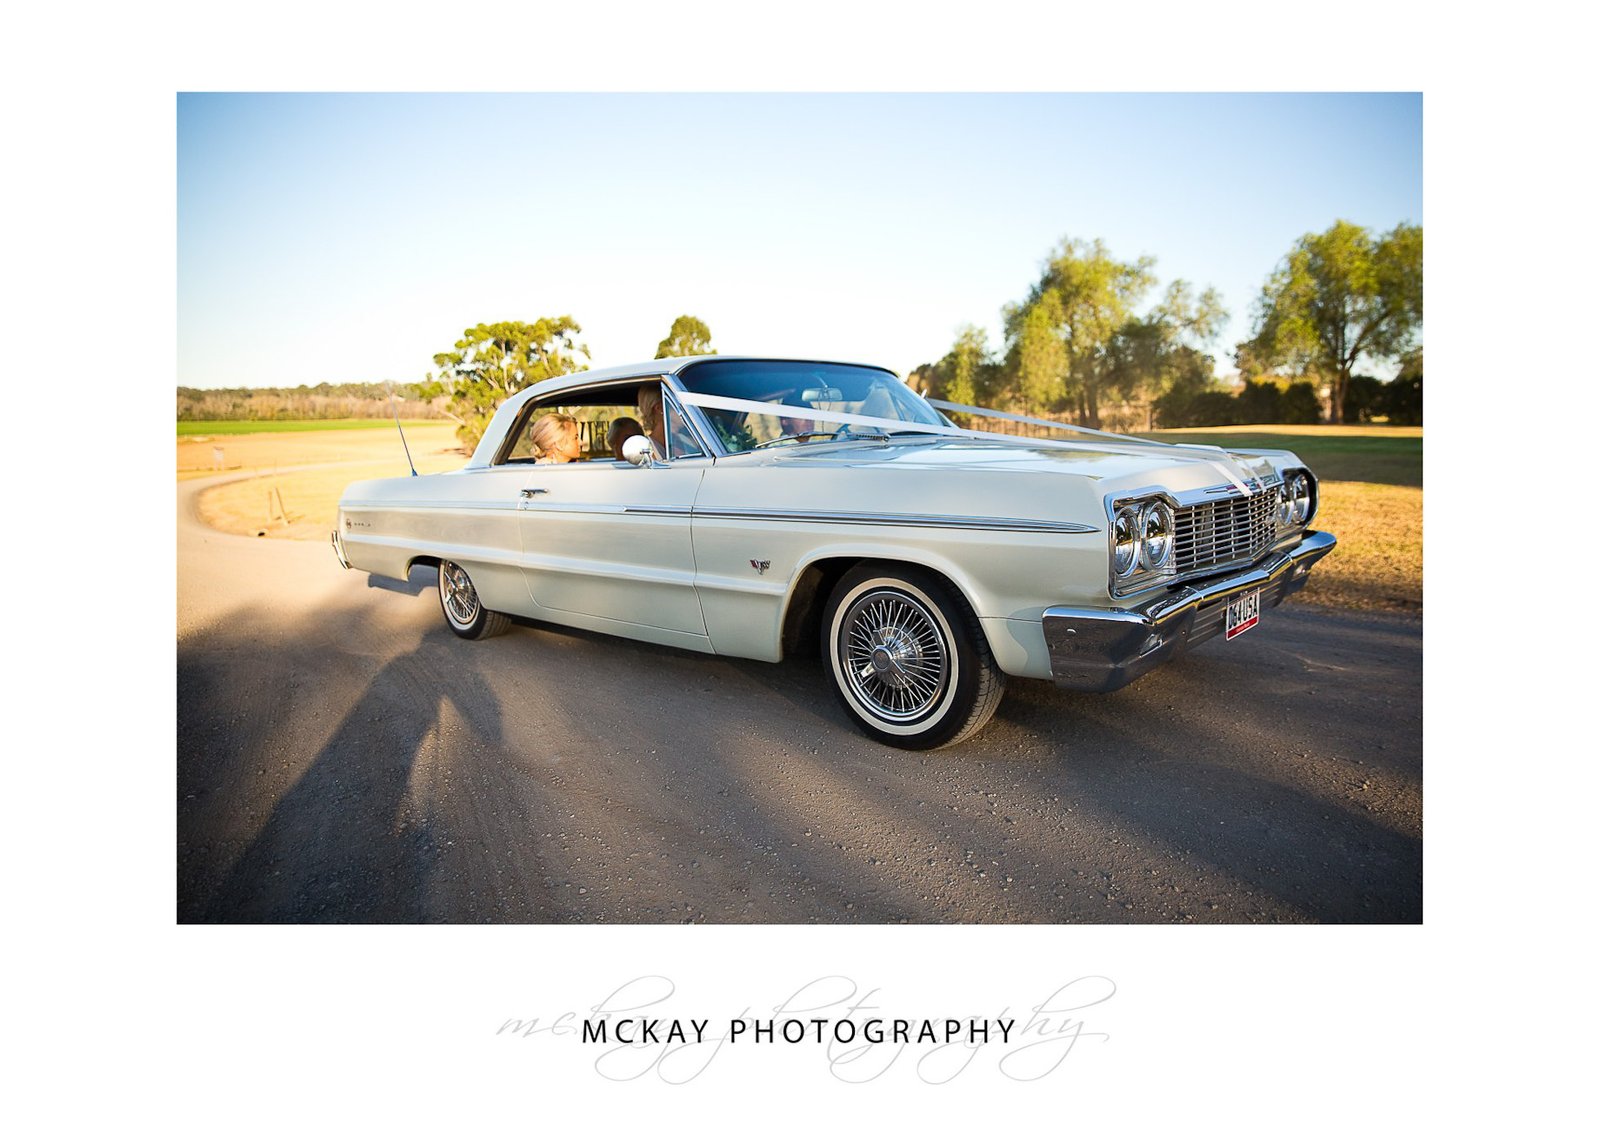 Chev Impala wedding car